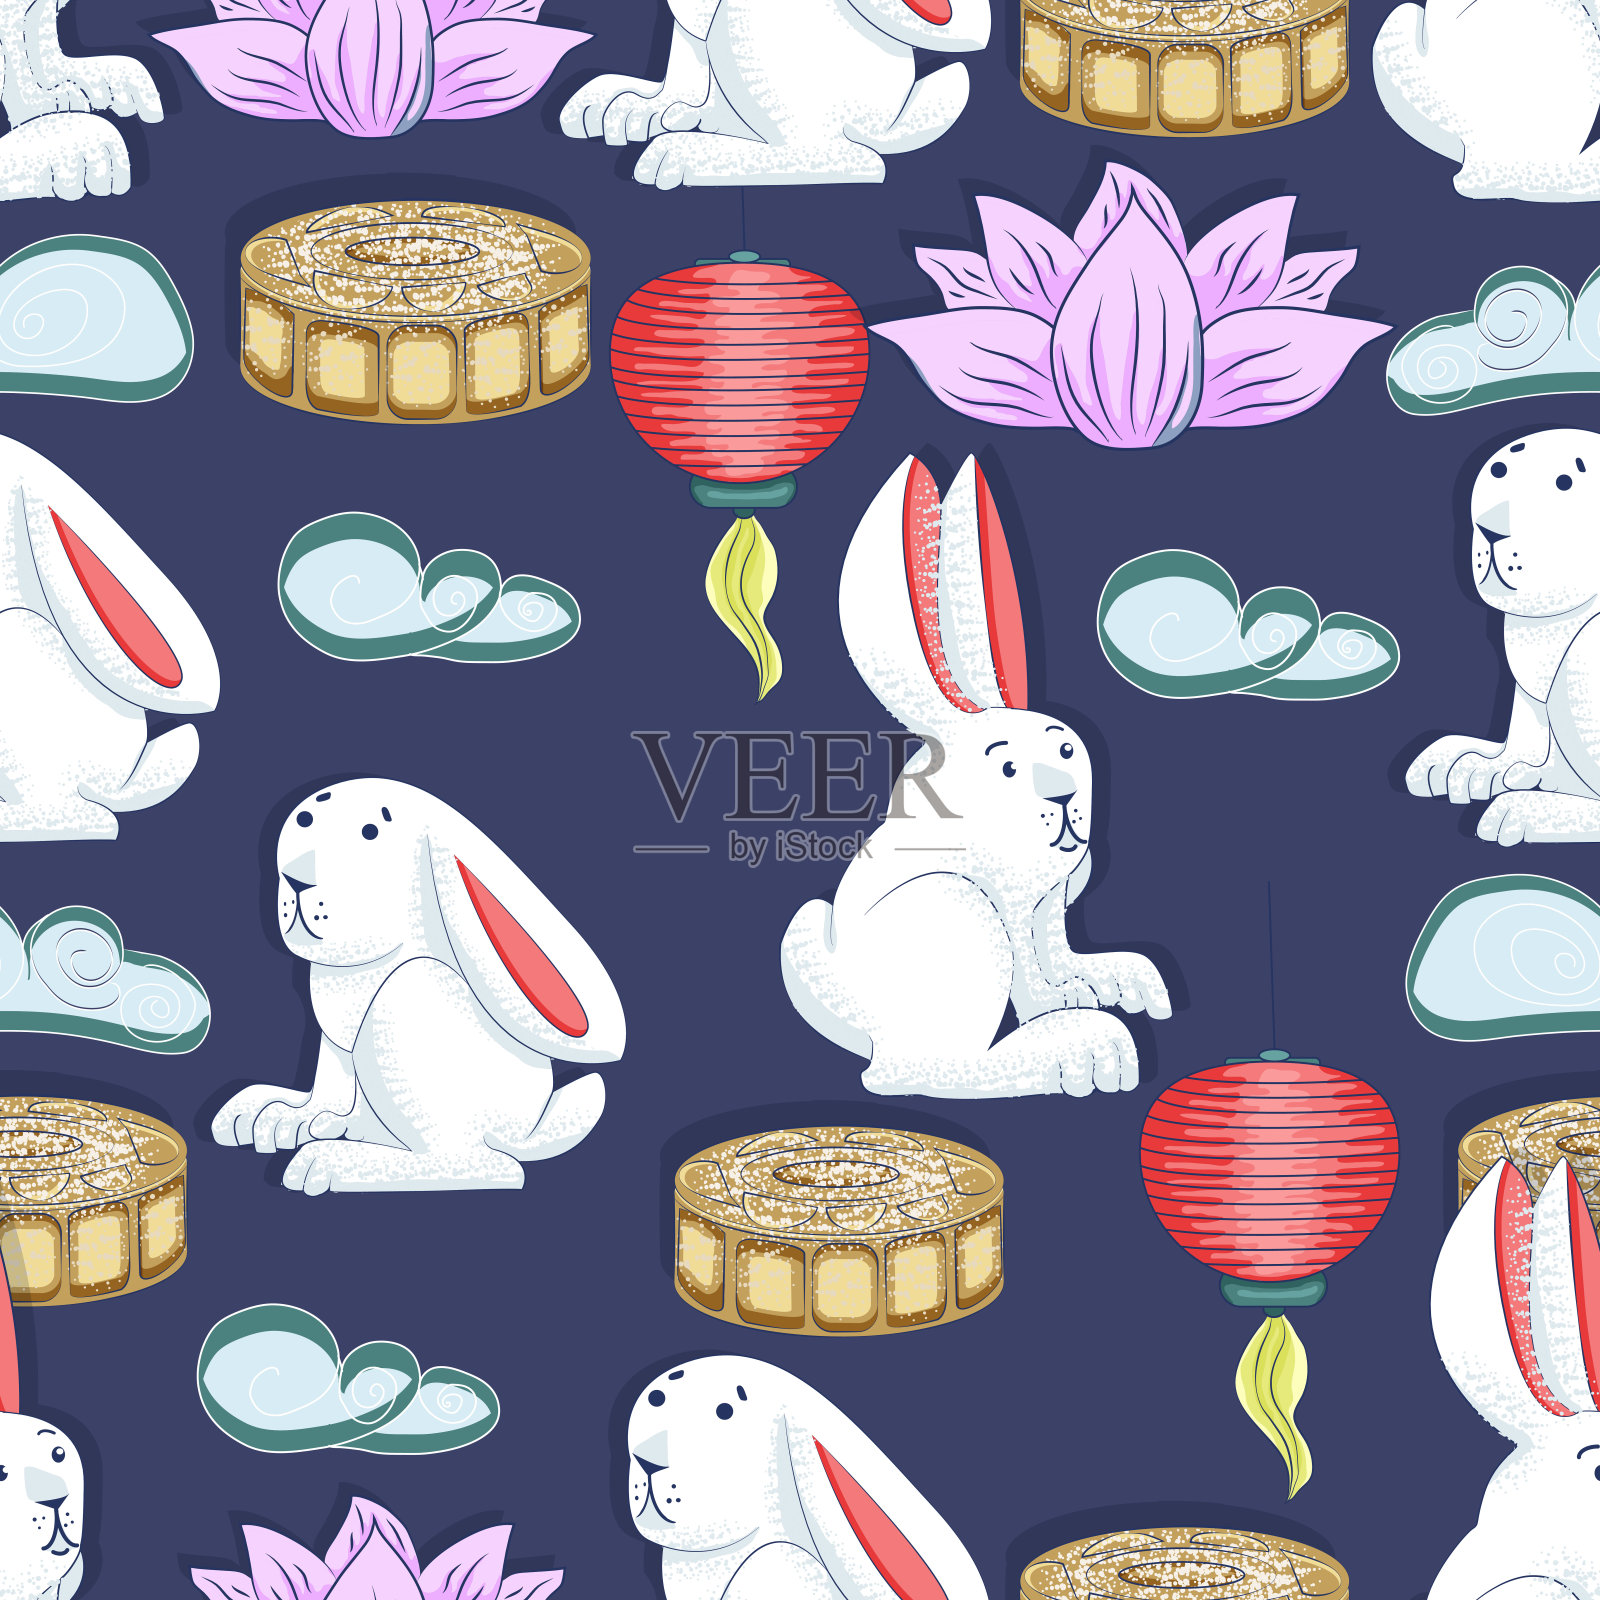 中秋节的背景有兔子、月饼、荷花、云彩和中国灯笼。向量无缝模式。插画图片素材